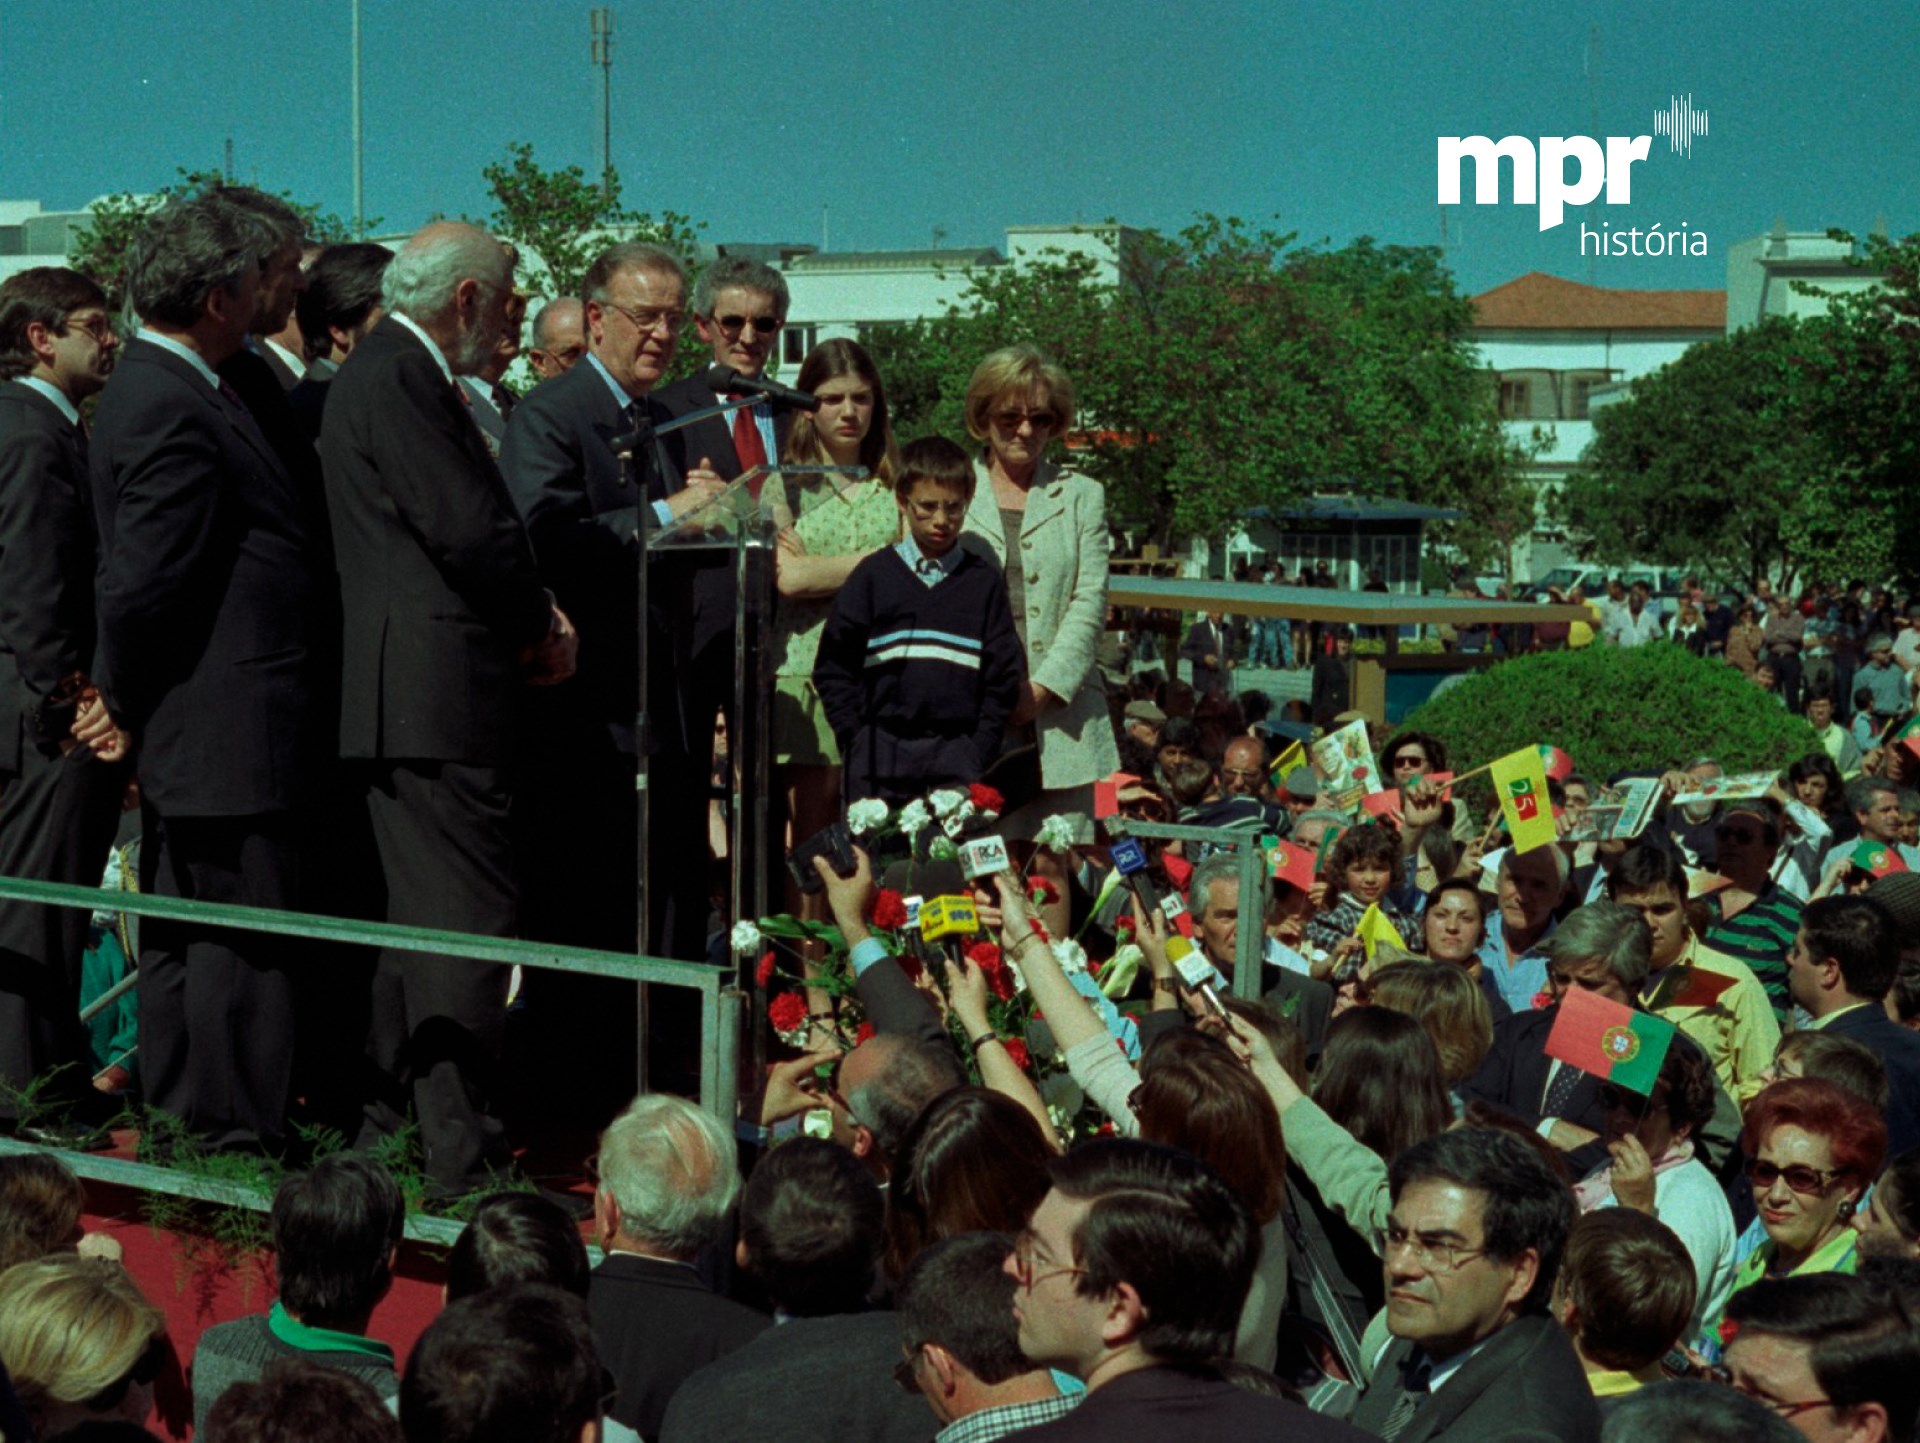 O Presidente Jorge Sampaio, demais autoridades, com a viúva e filhos de Salgueiro Maia, na cerimónia de inauguração do monumento dedicado ao capitão de Abril.